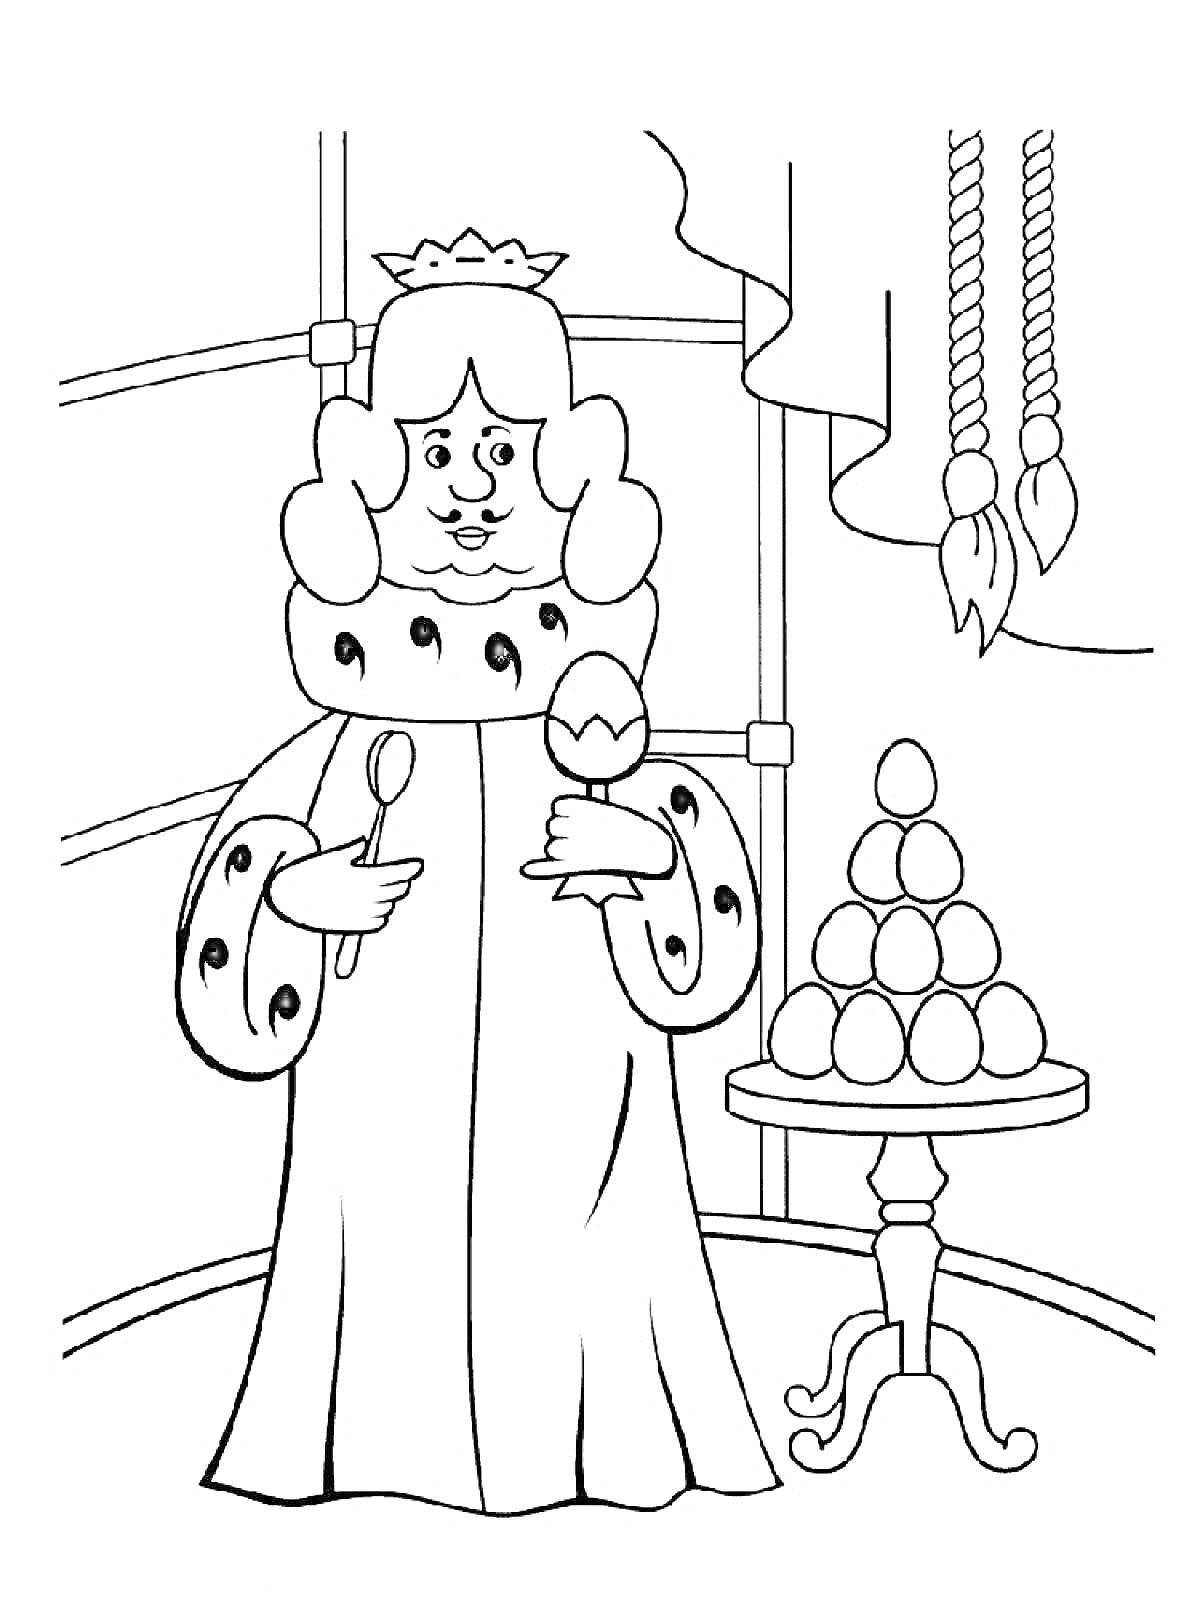 Раскраска Царь с яйцом и ложкой в руках на фоне стола с пирамидой из яиц